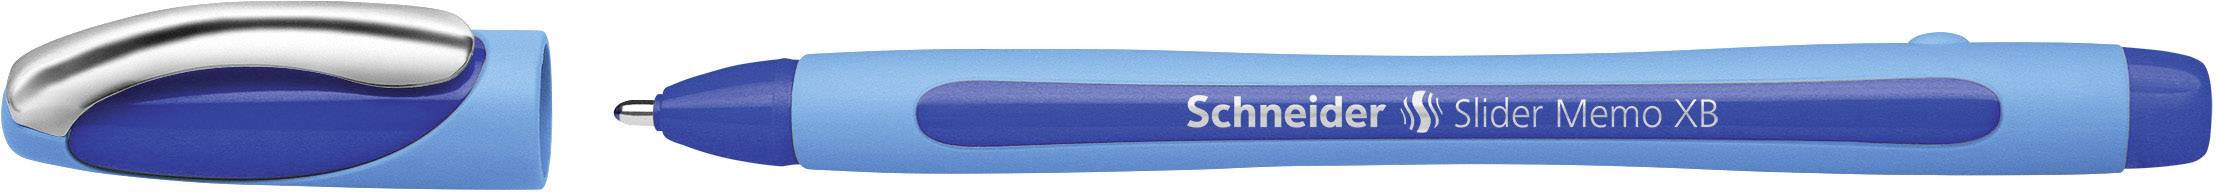 SCHNEIDER Kugelschreiber Slider Memo XB Blau (150203)